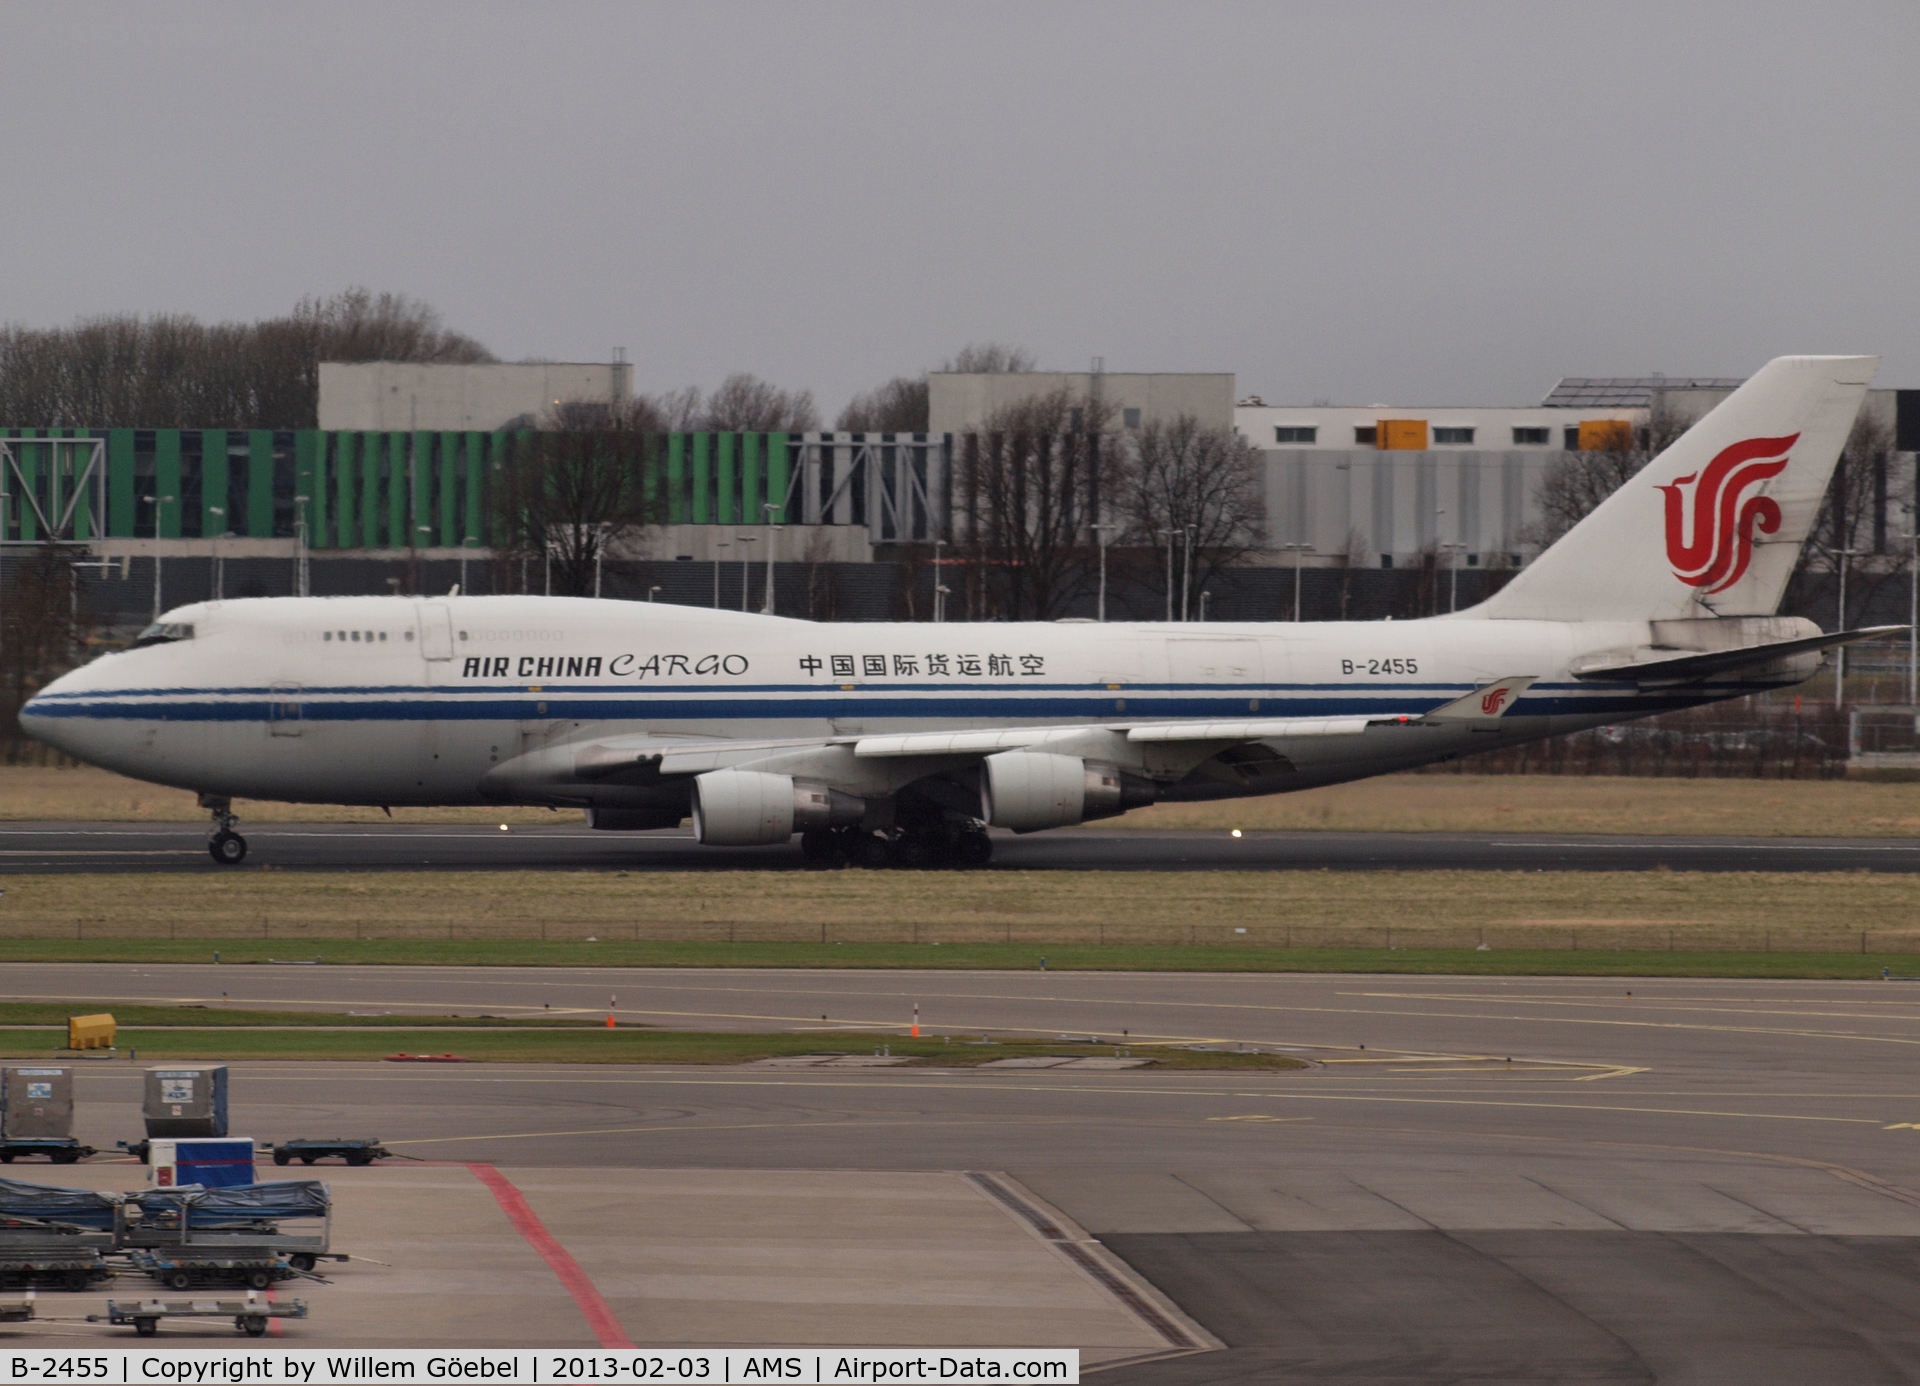 B-2455, 1994 Boeing 747-412/BCF C/N 27070, Landing on runway 27 of Schiphol Airport